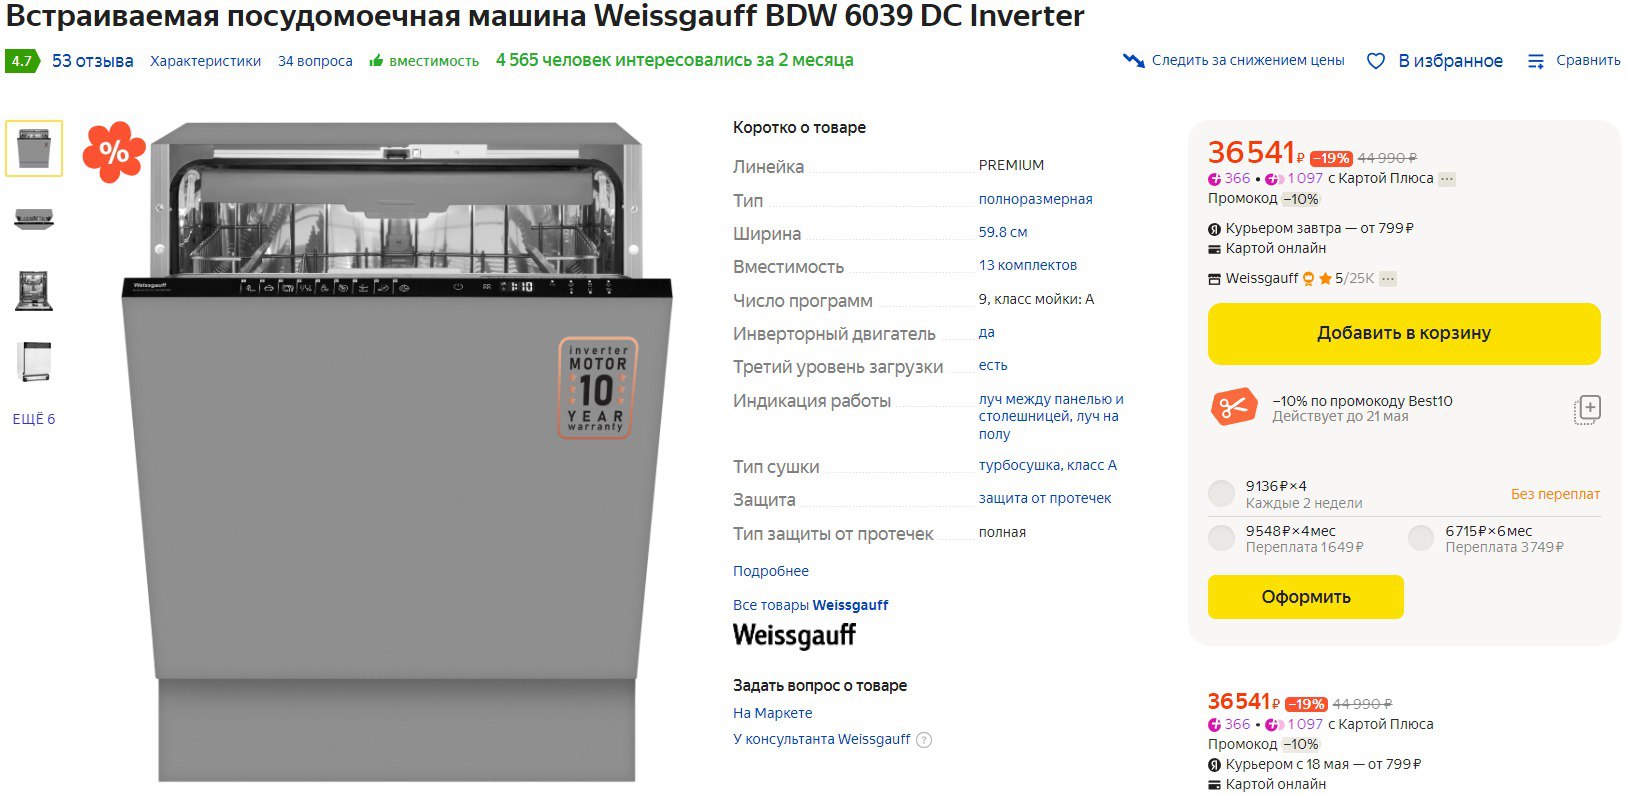 Weissgauff wm 5649 dc inverter steam отзыв фото 106